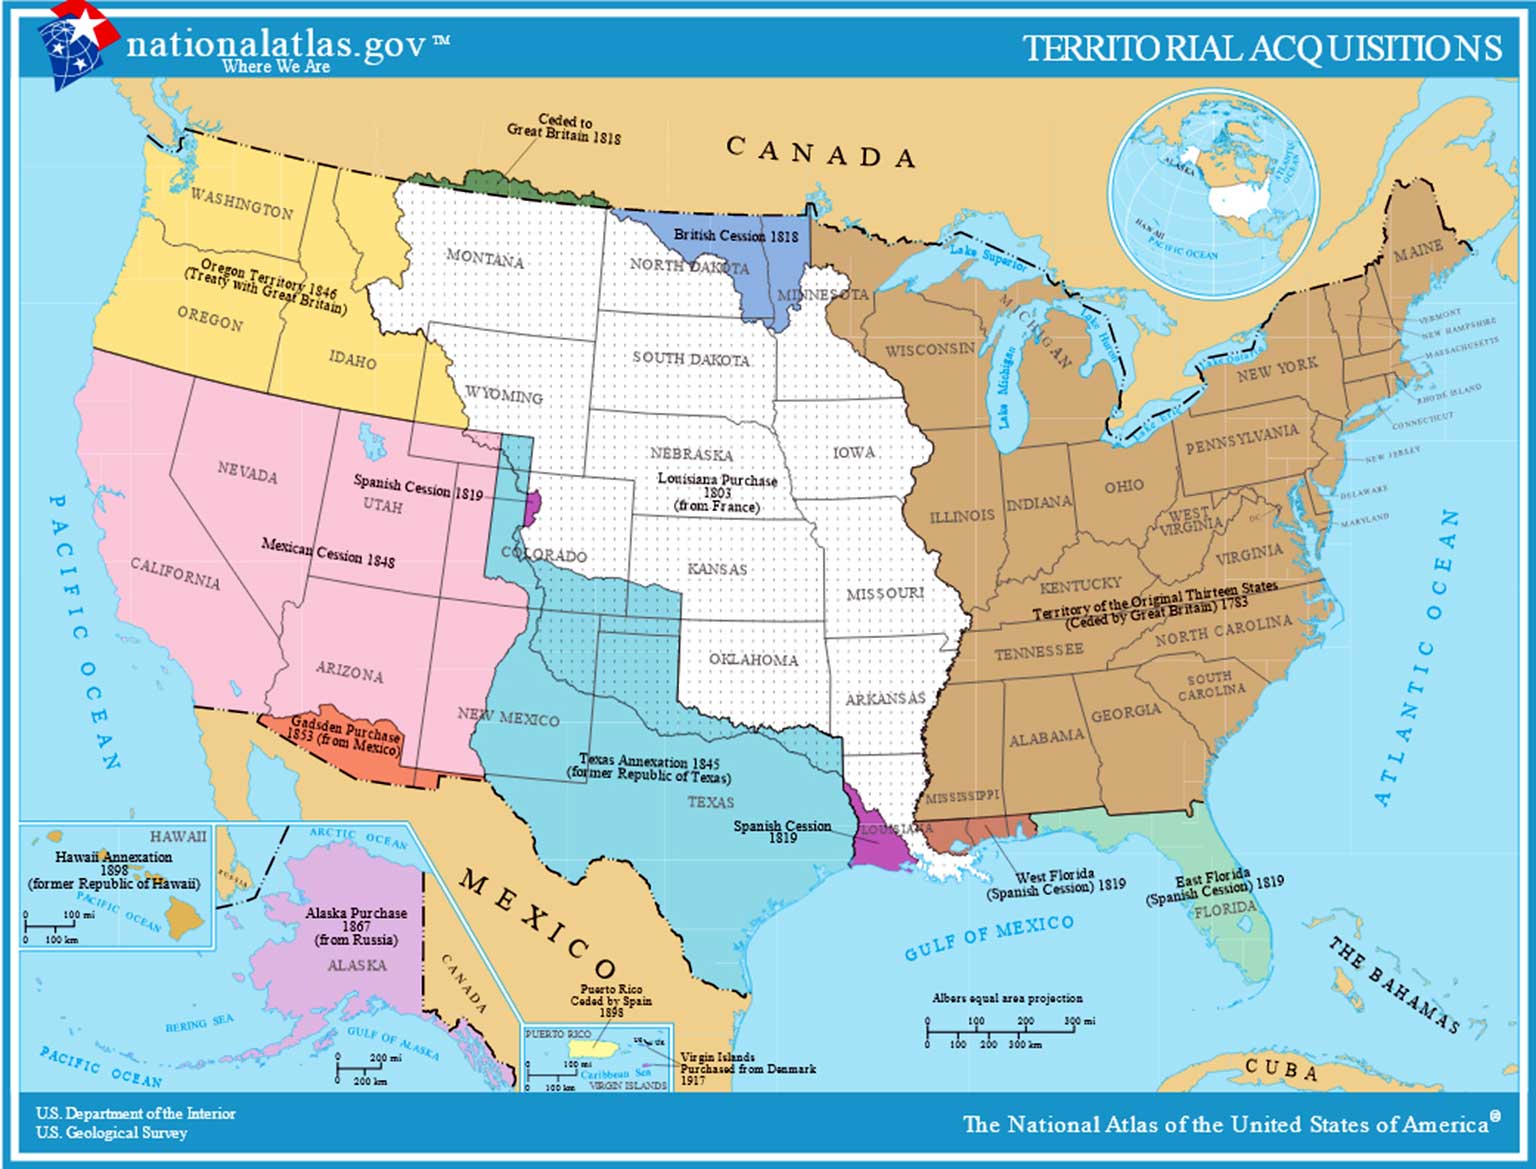 De aankoop van grond van Frankrijk in 1803 door de Verenigde Staten, de Louisiana Purchase